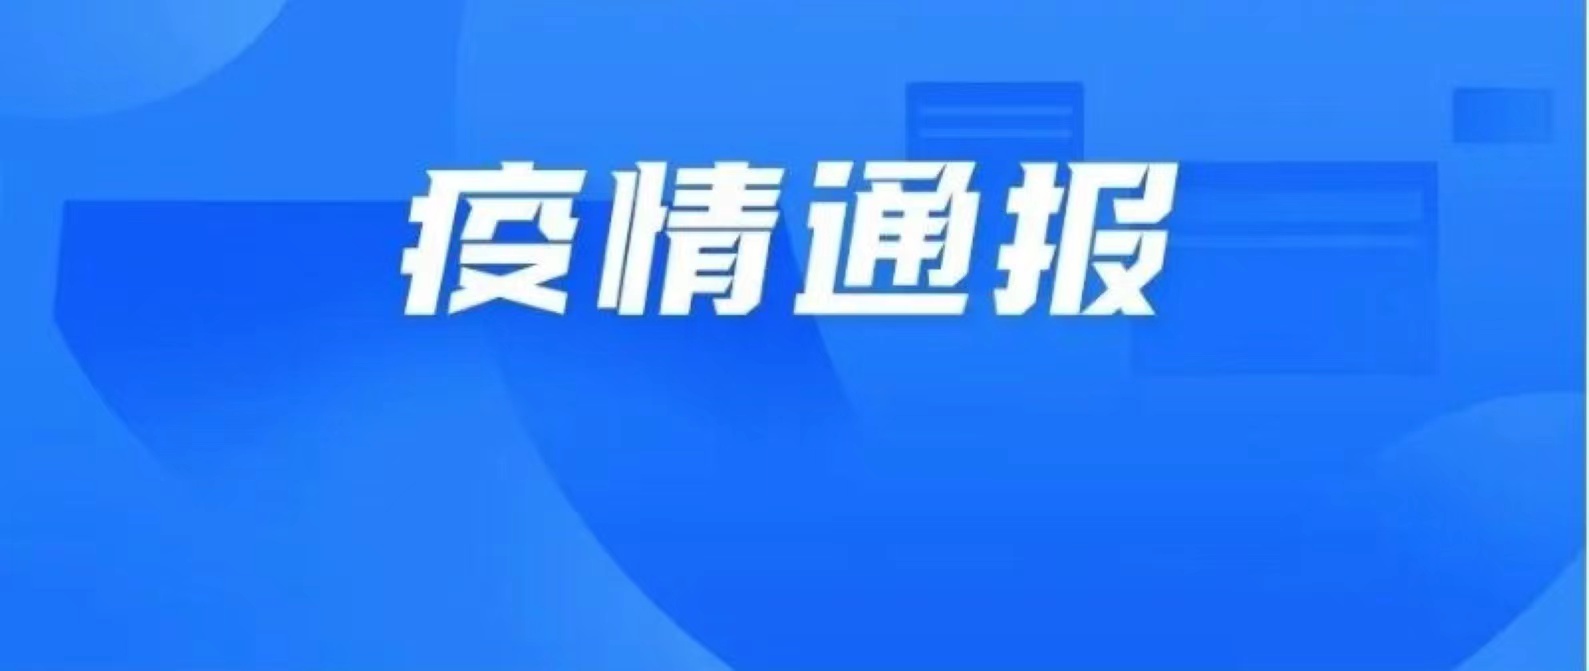 10月15日深圳新增7例确诊病例和8例无症状感染者